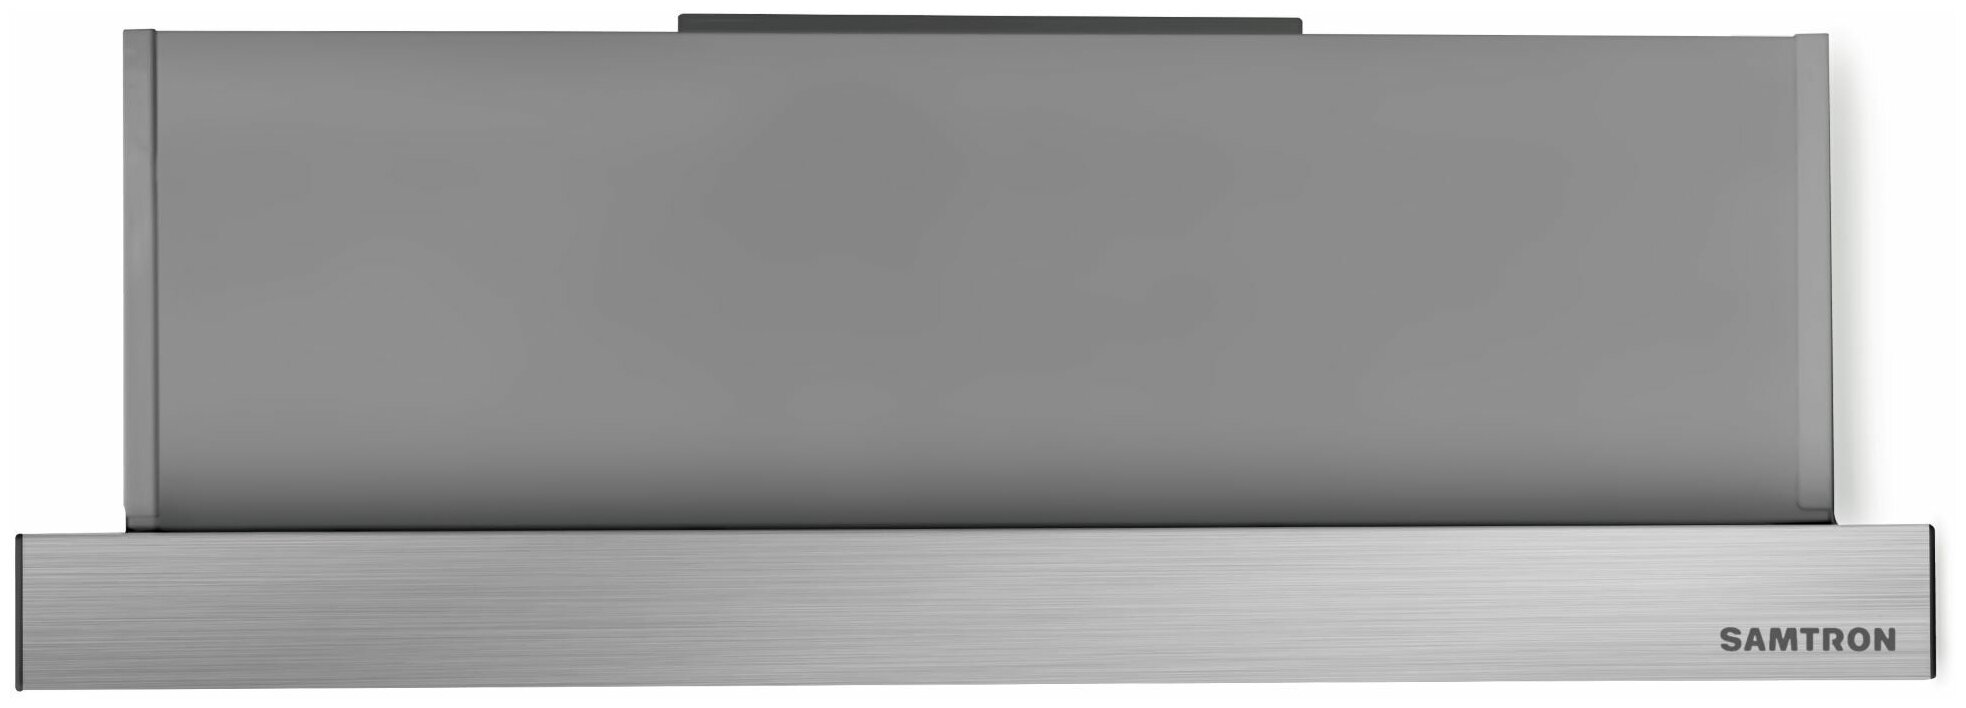 Samtron Bi 500 inox вытяжка встраиваемая в шкаф нержавеющая сталь - фотография № 2